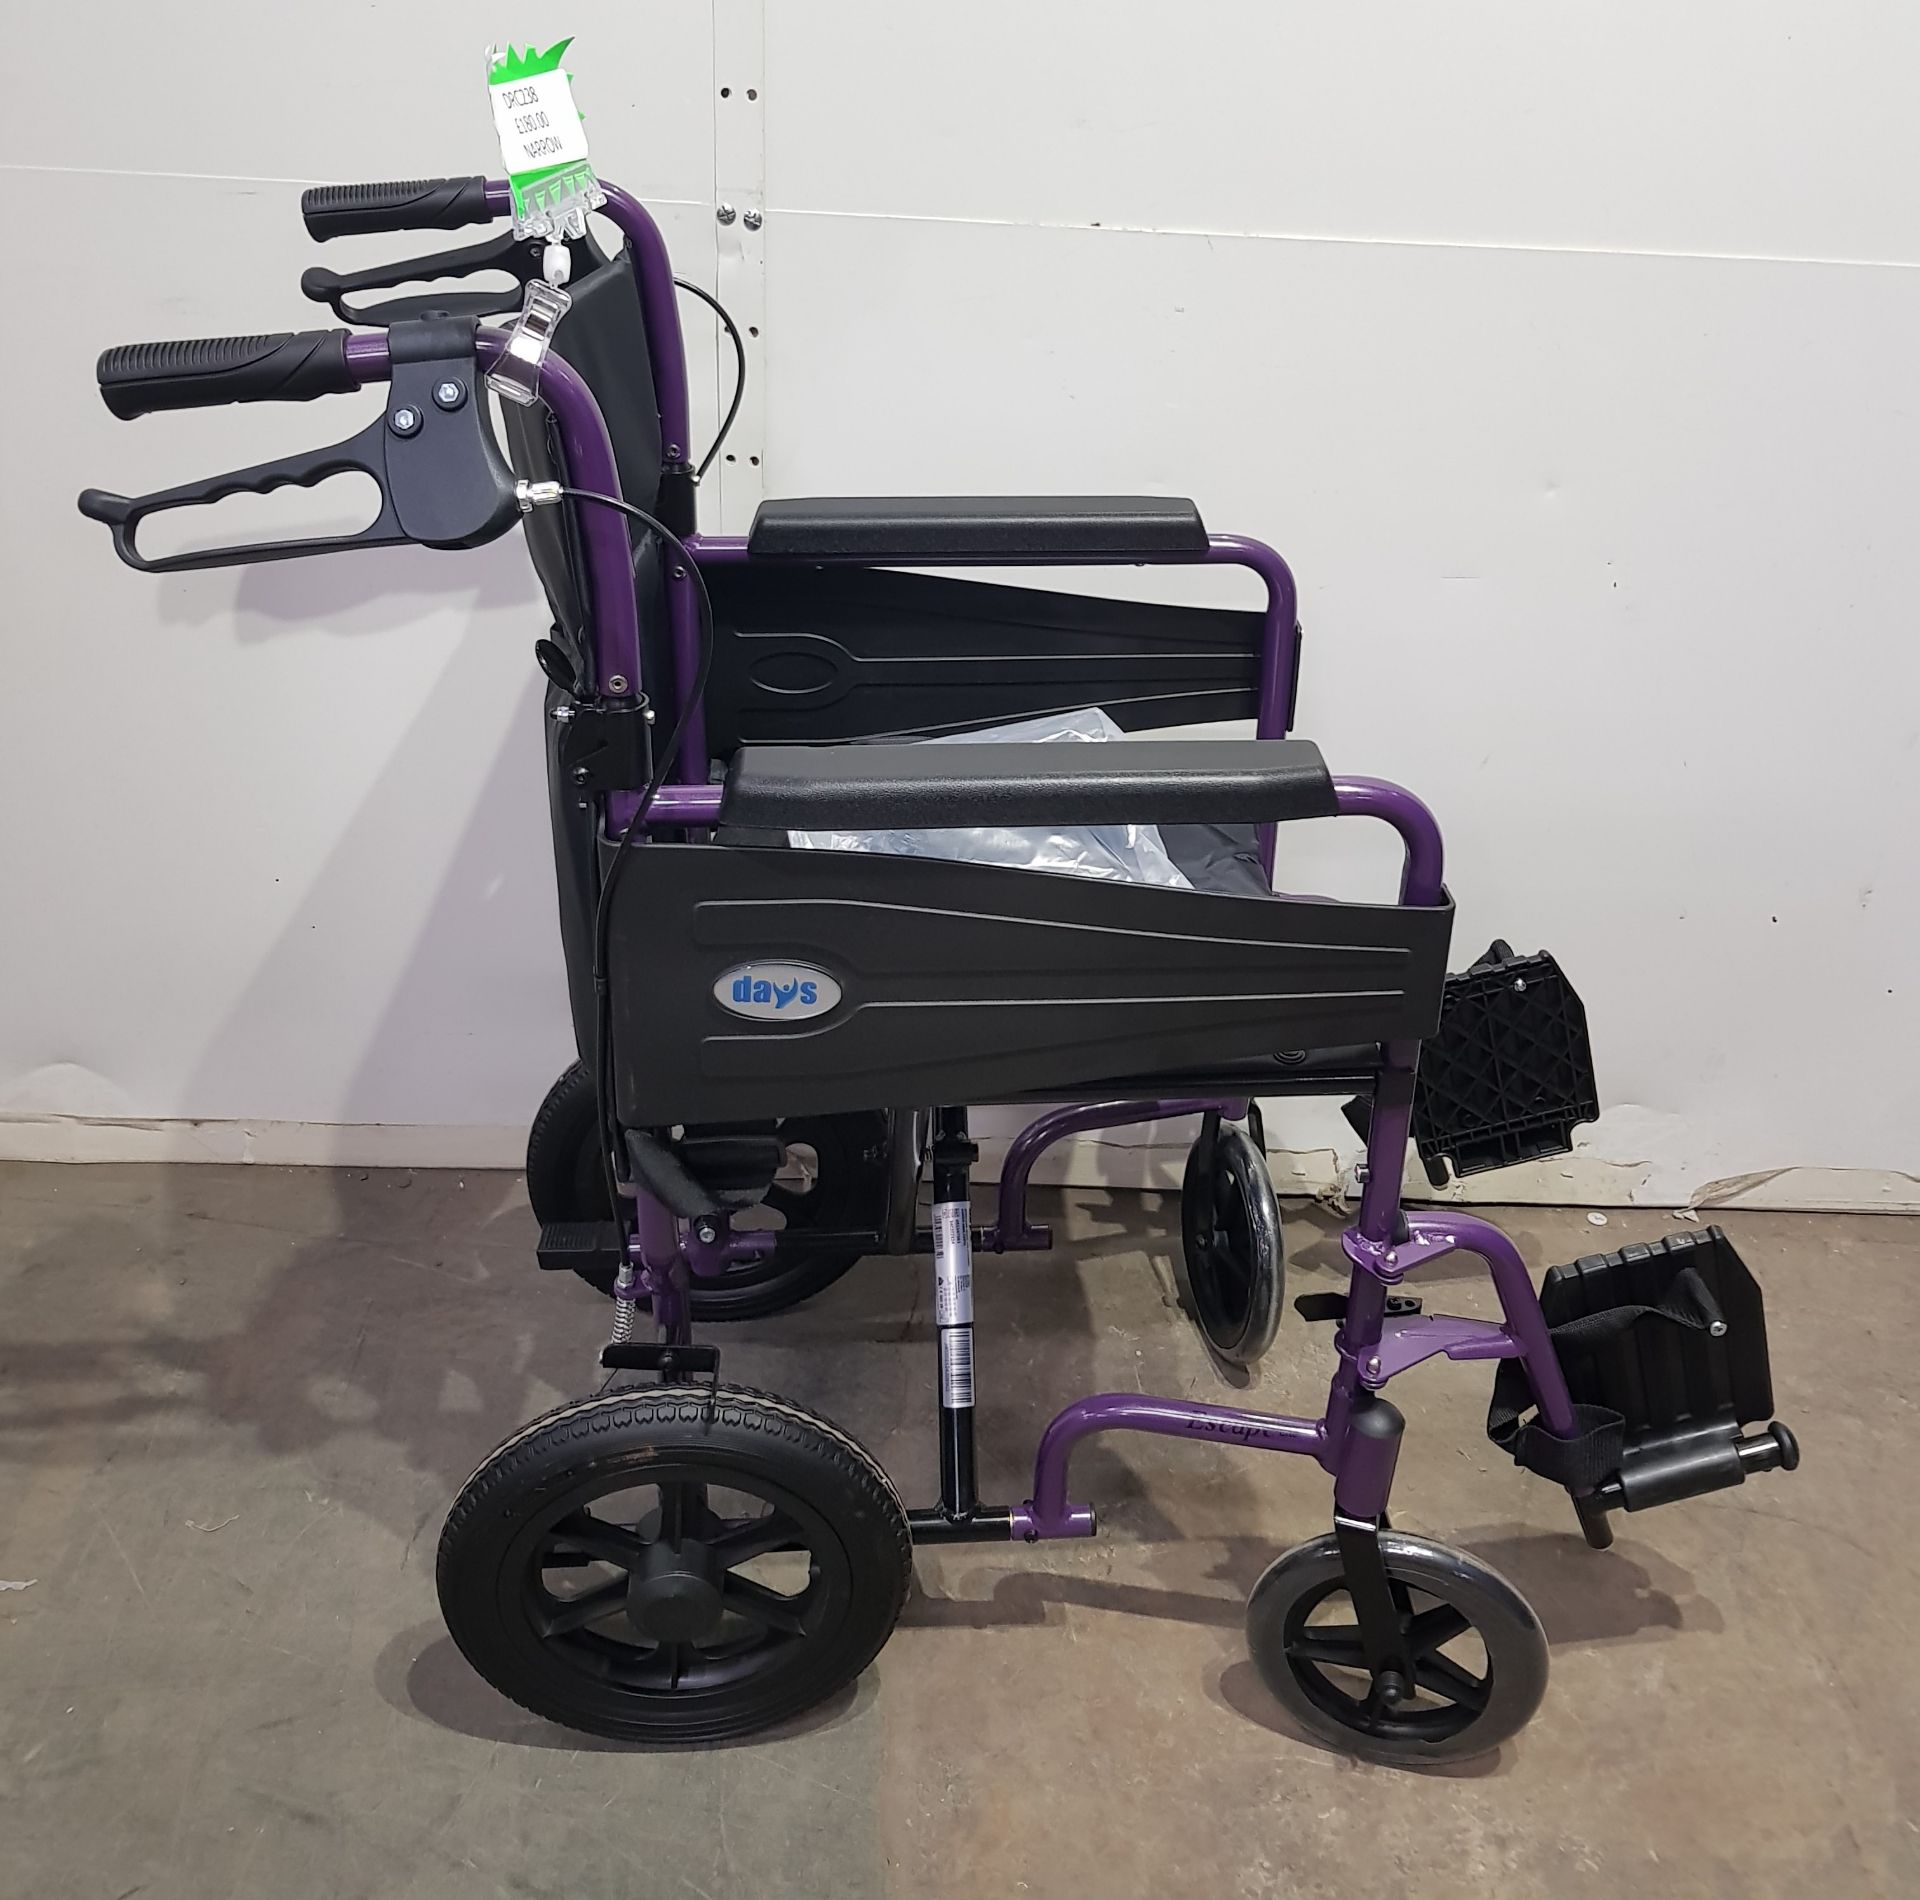 Days Escape Lite Wheelchair - Bild 2 aus 4